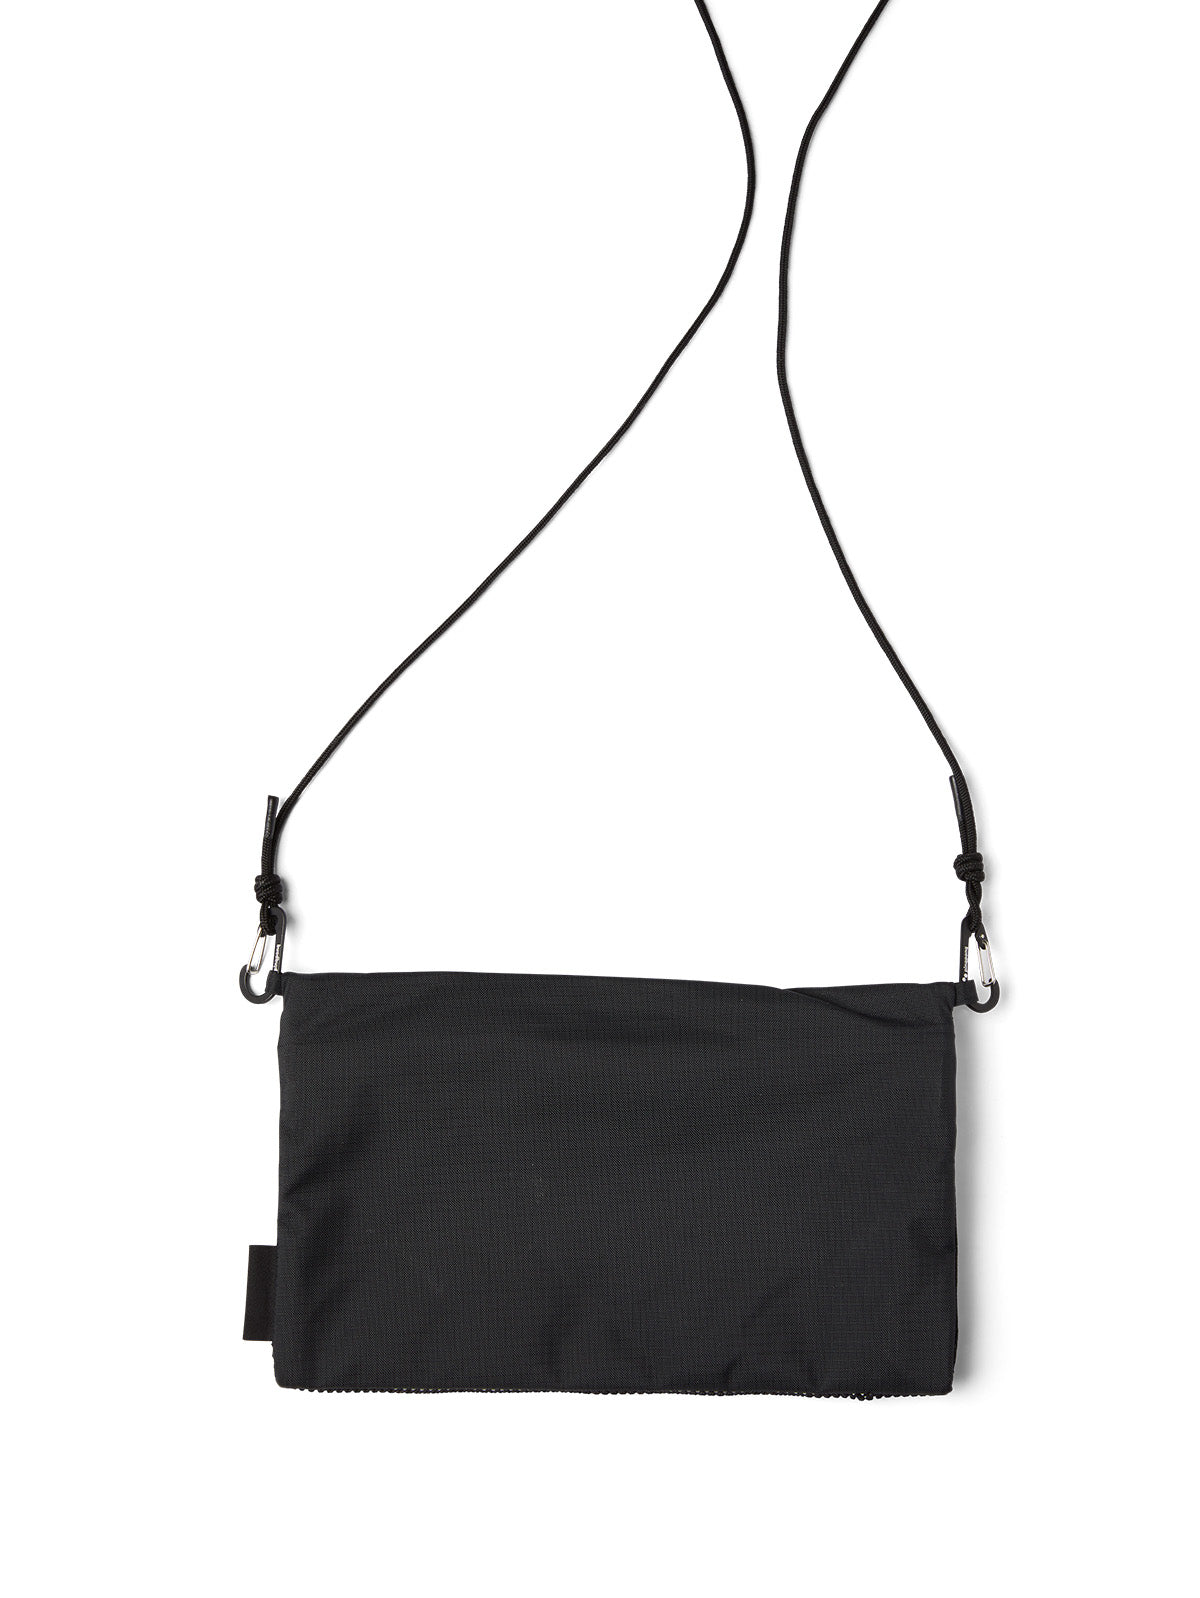 pinqponq-chest-bag-Flak-Large-Pure-Black-back